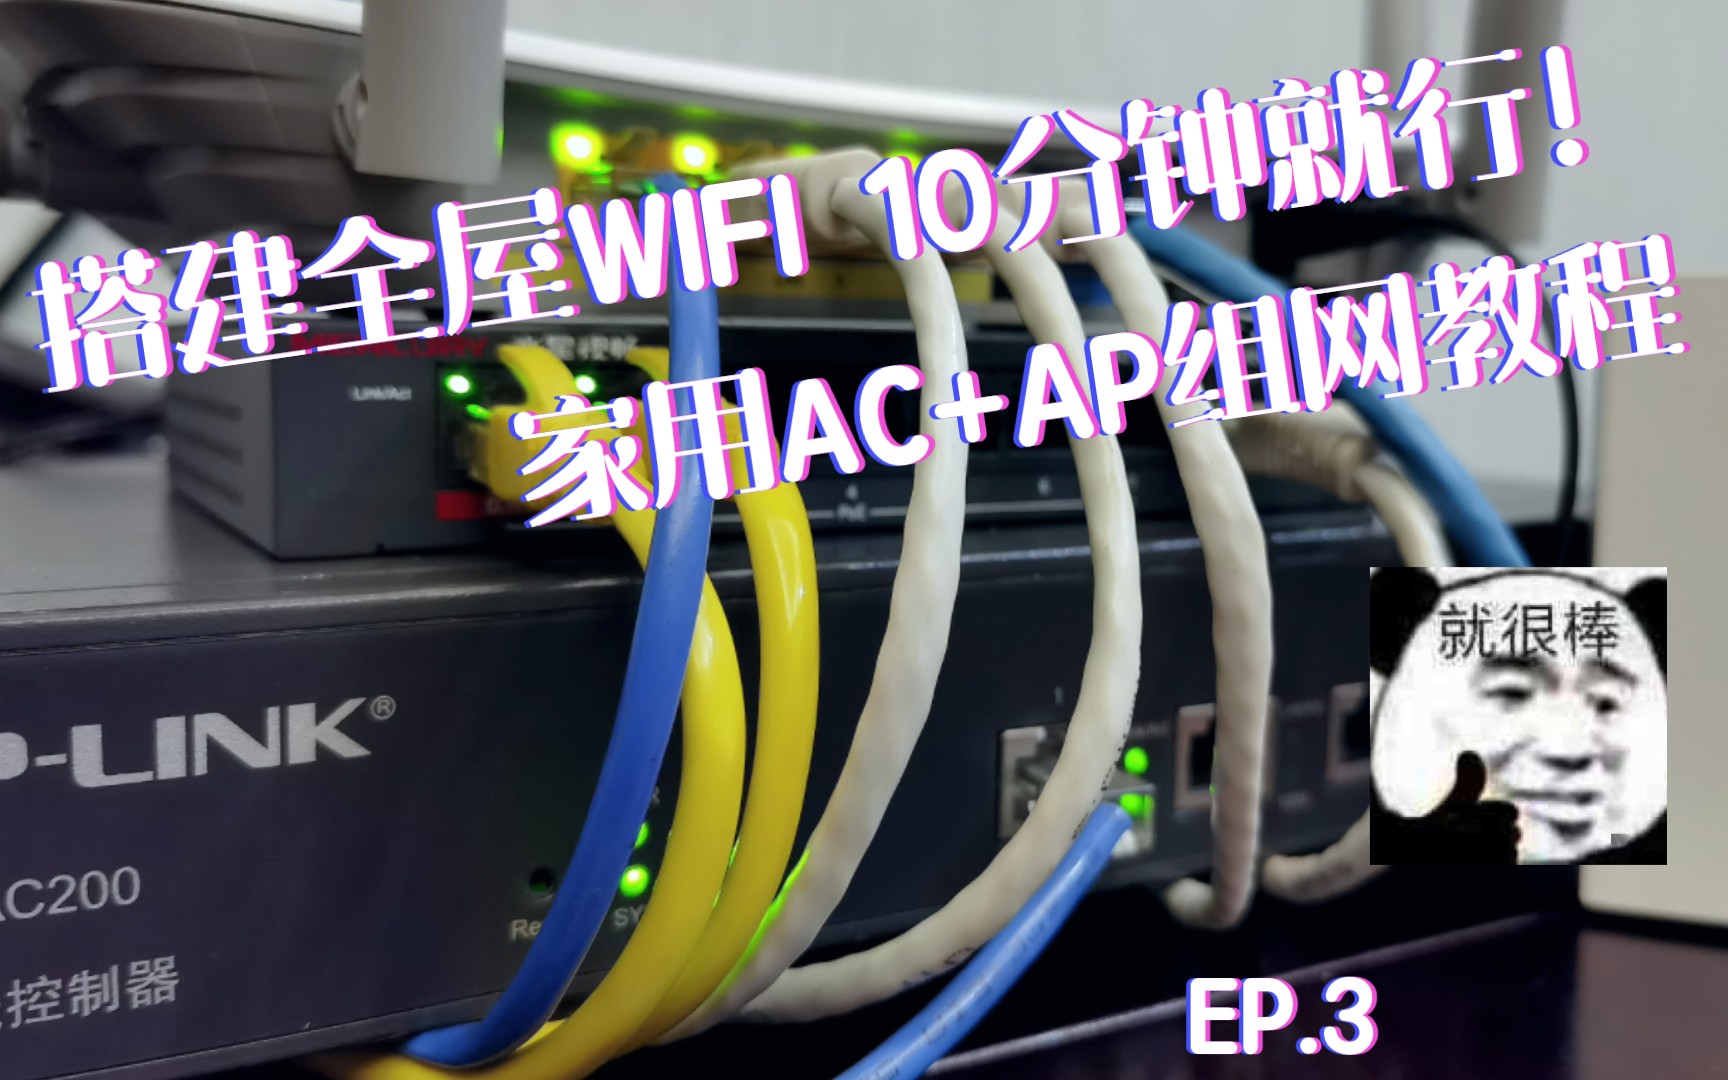 十分钟搞定全屋WIFI  EP.3  连接与设置  AC+AP组网模式